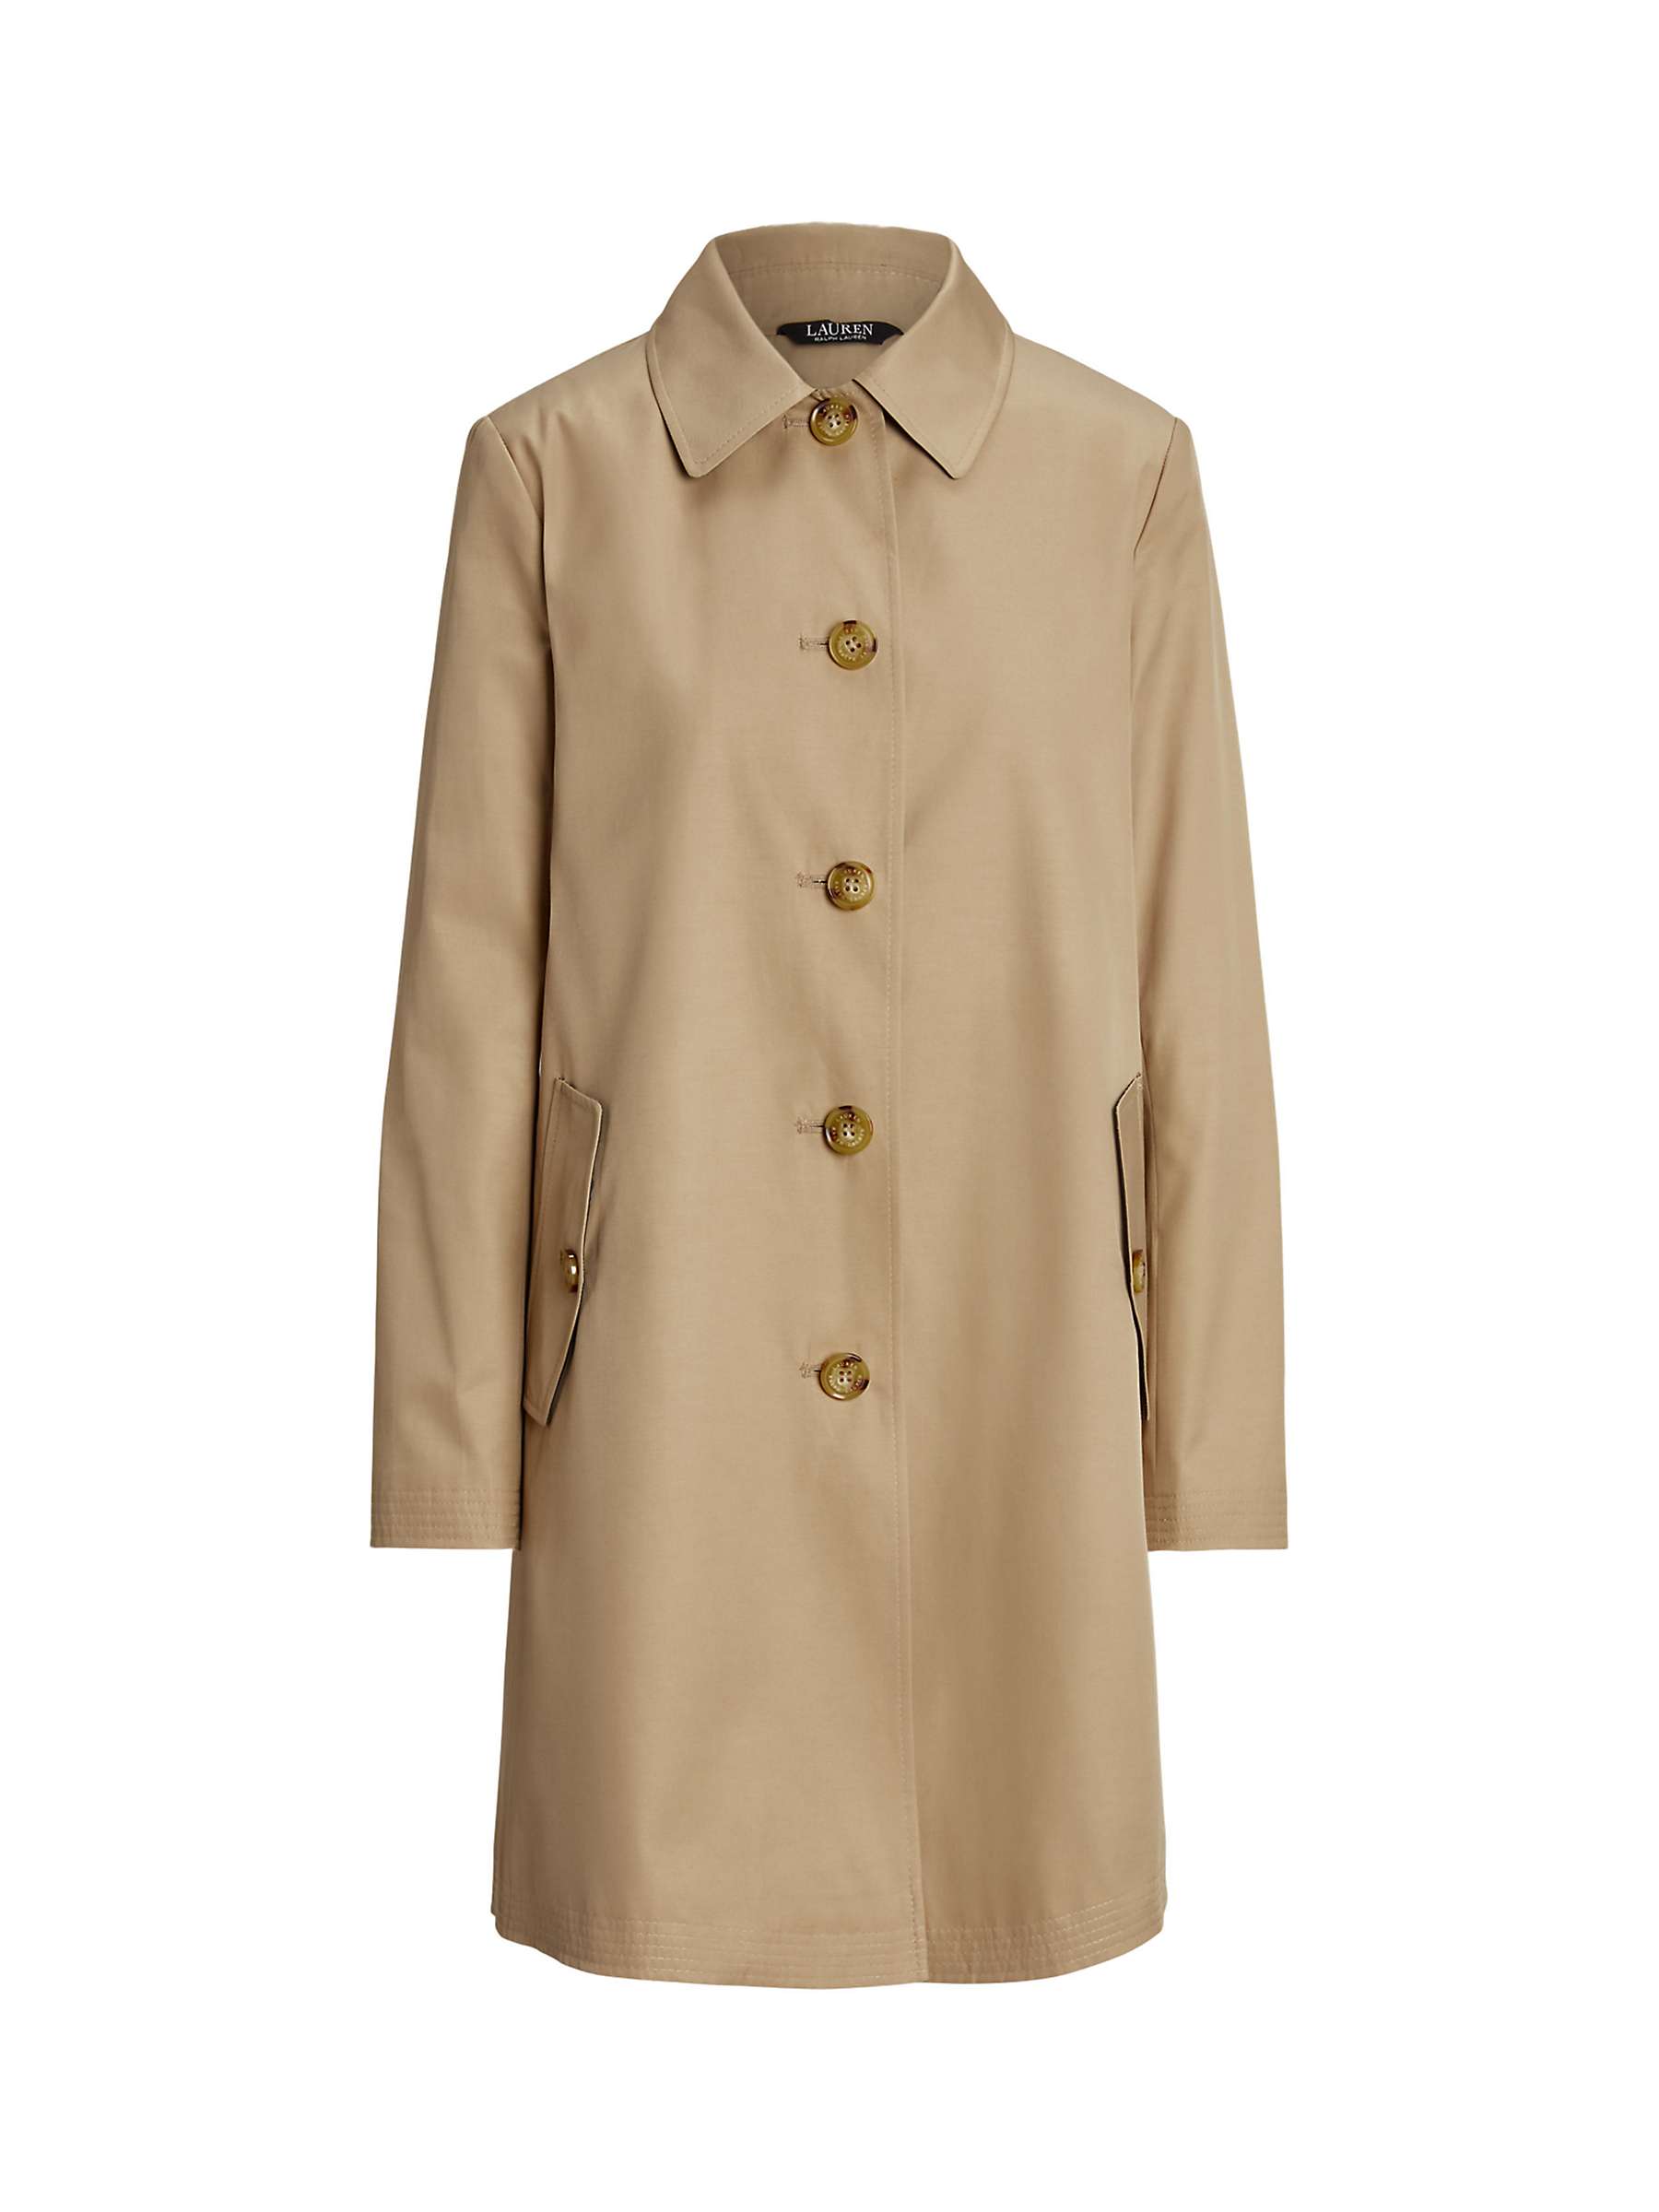 Buy Lauren Ralph Lauren Hooded Cotton Blend Coat Online at johnlewis.com